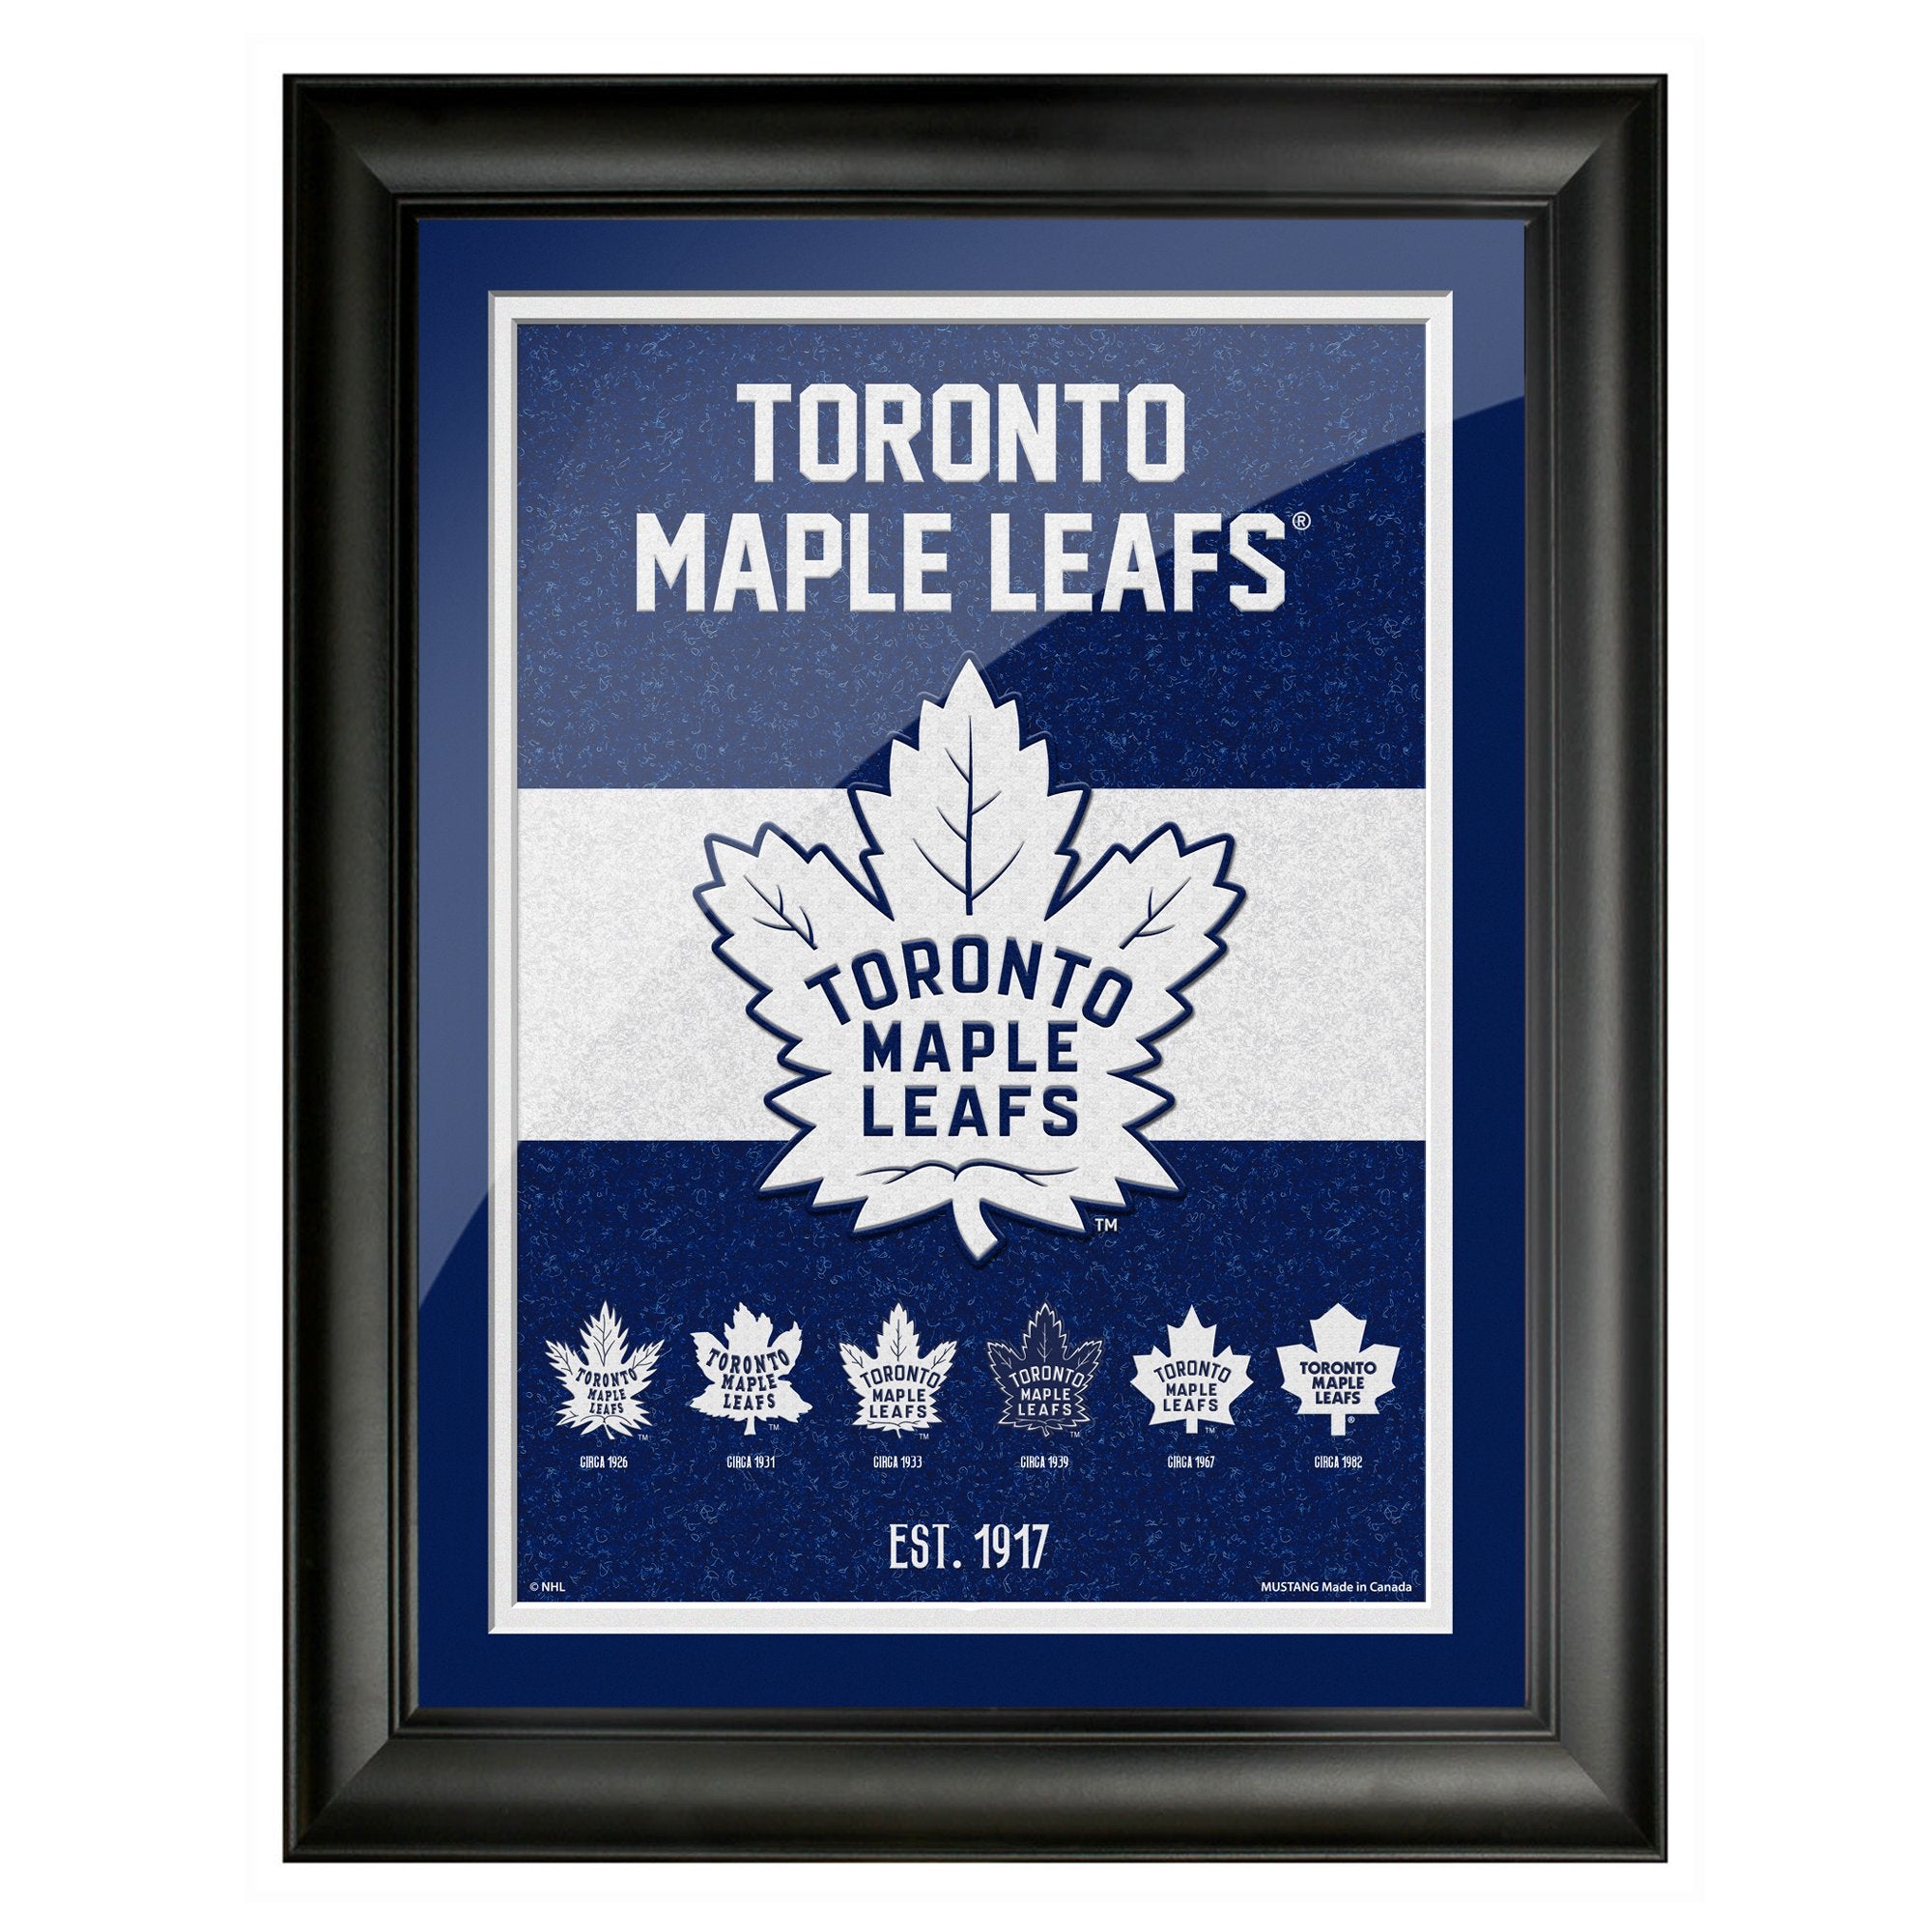 Toronto Maple Leafs on X: LEAFS